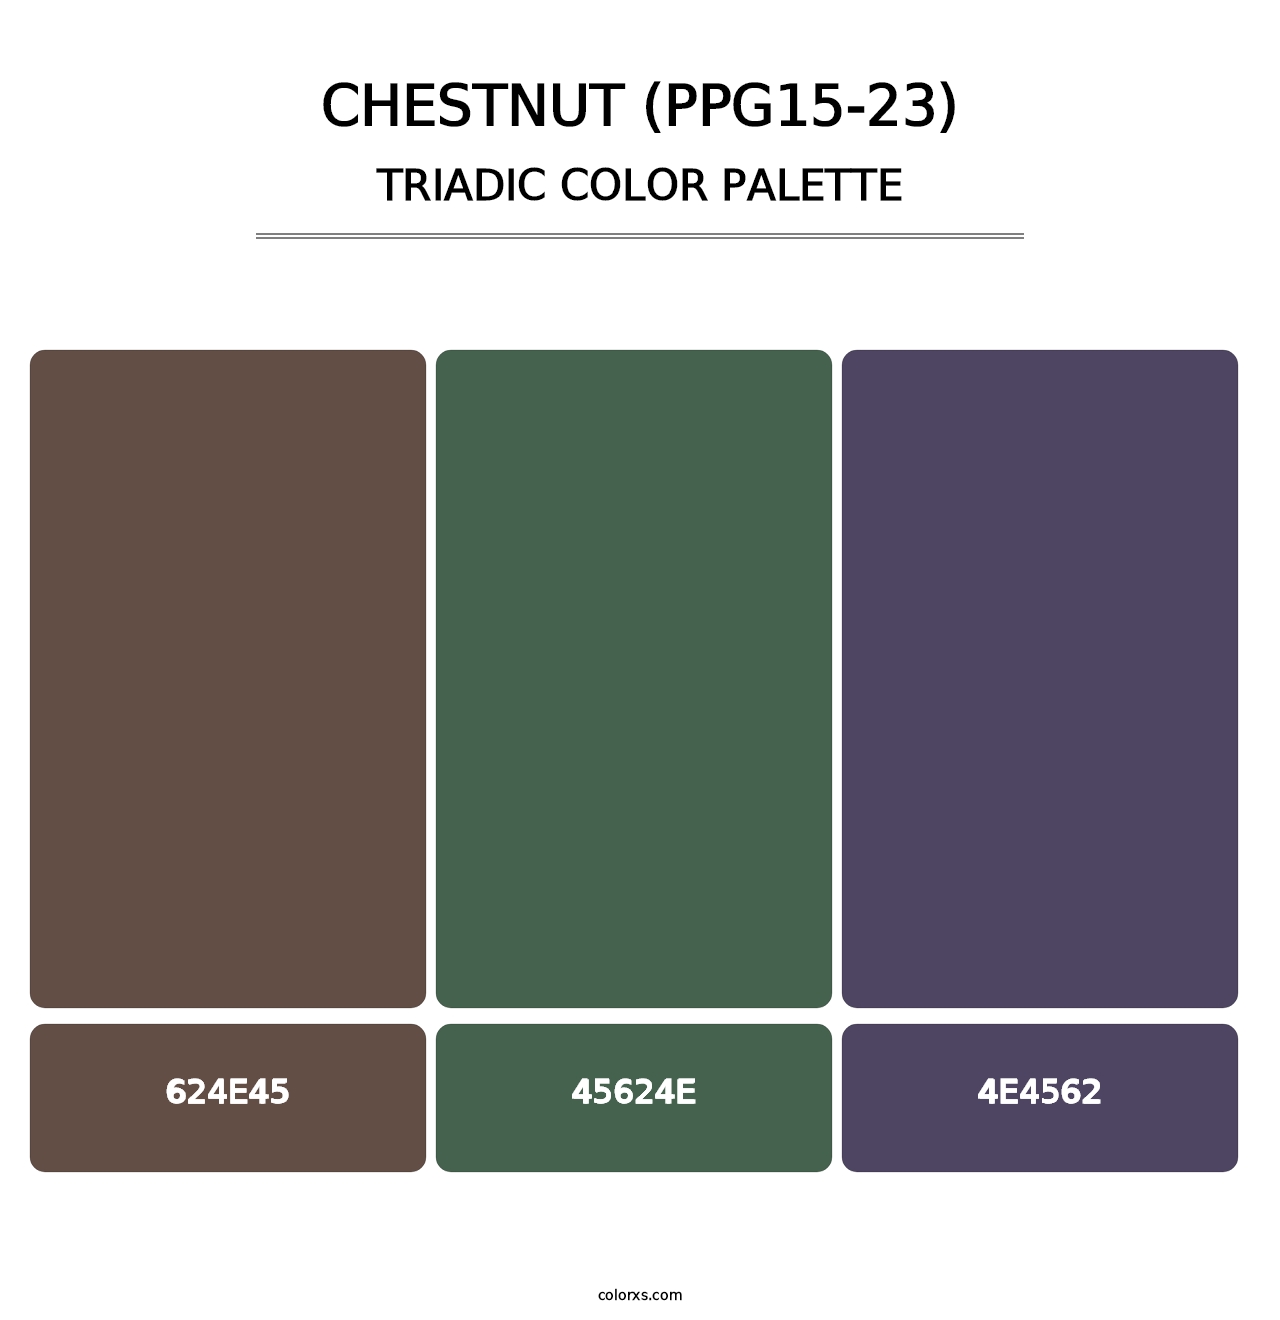 Chestnut (PPG15-23) - Triadic Color Palette